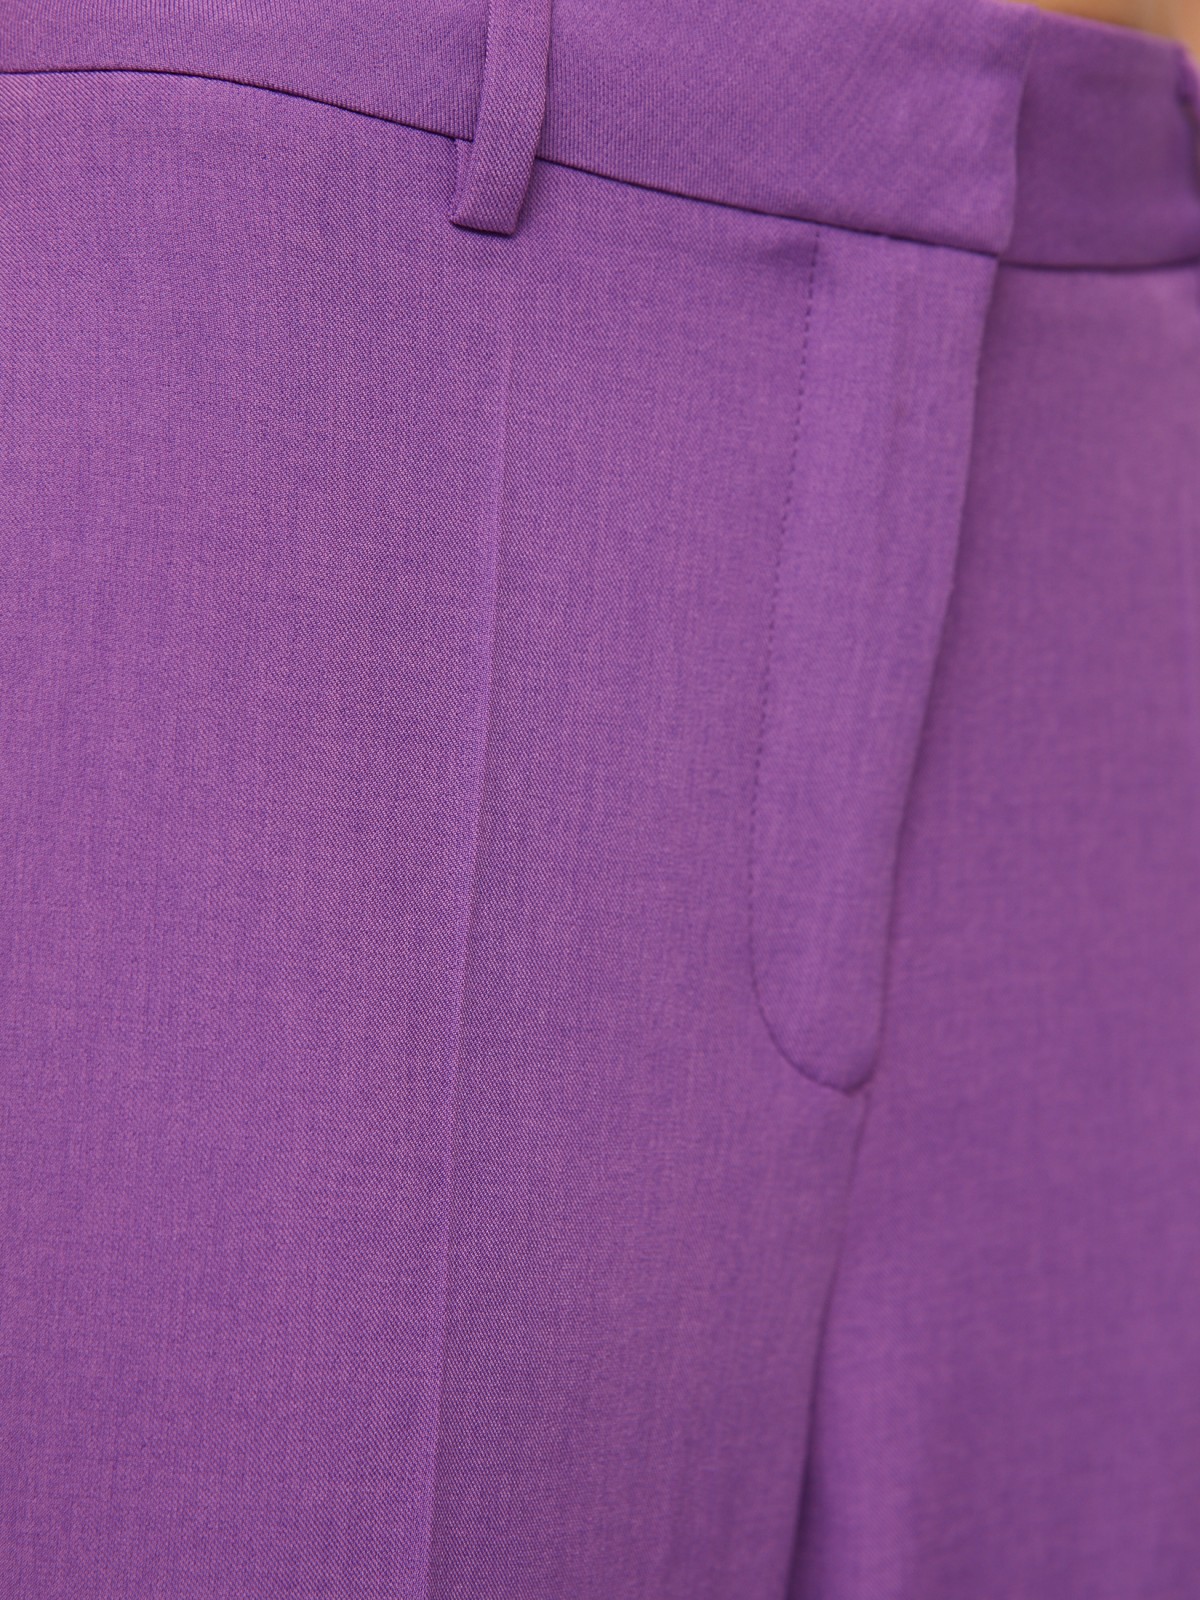 Классические прямые брюки со стрелками zolla 024247350063, цвет фиолетовый, размер XS - фото 3